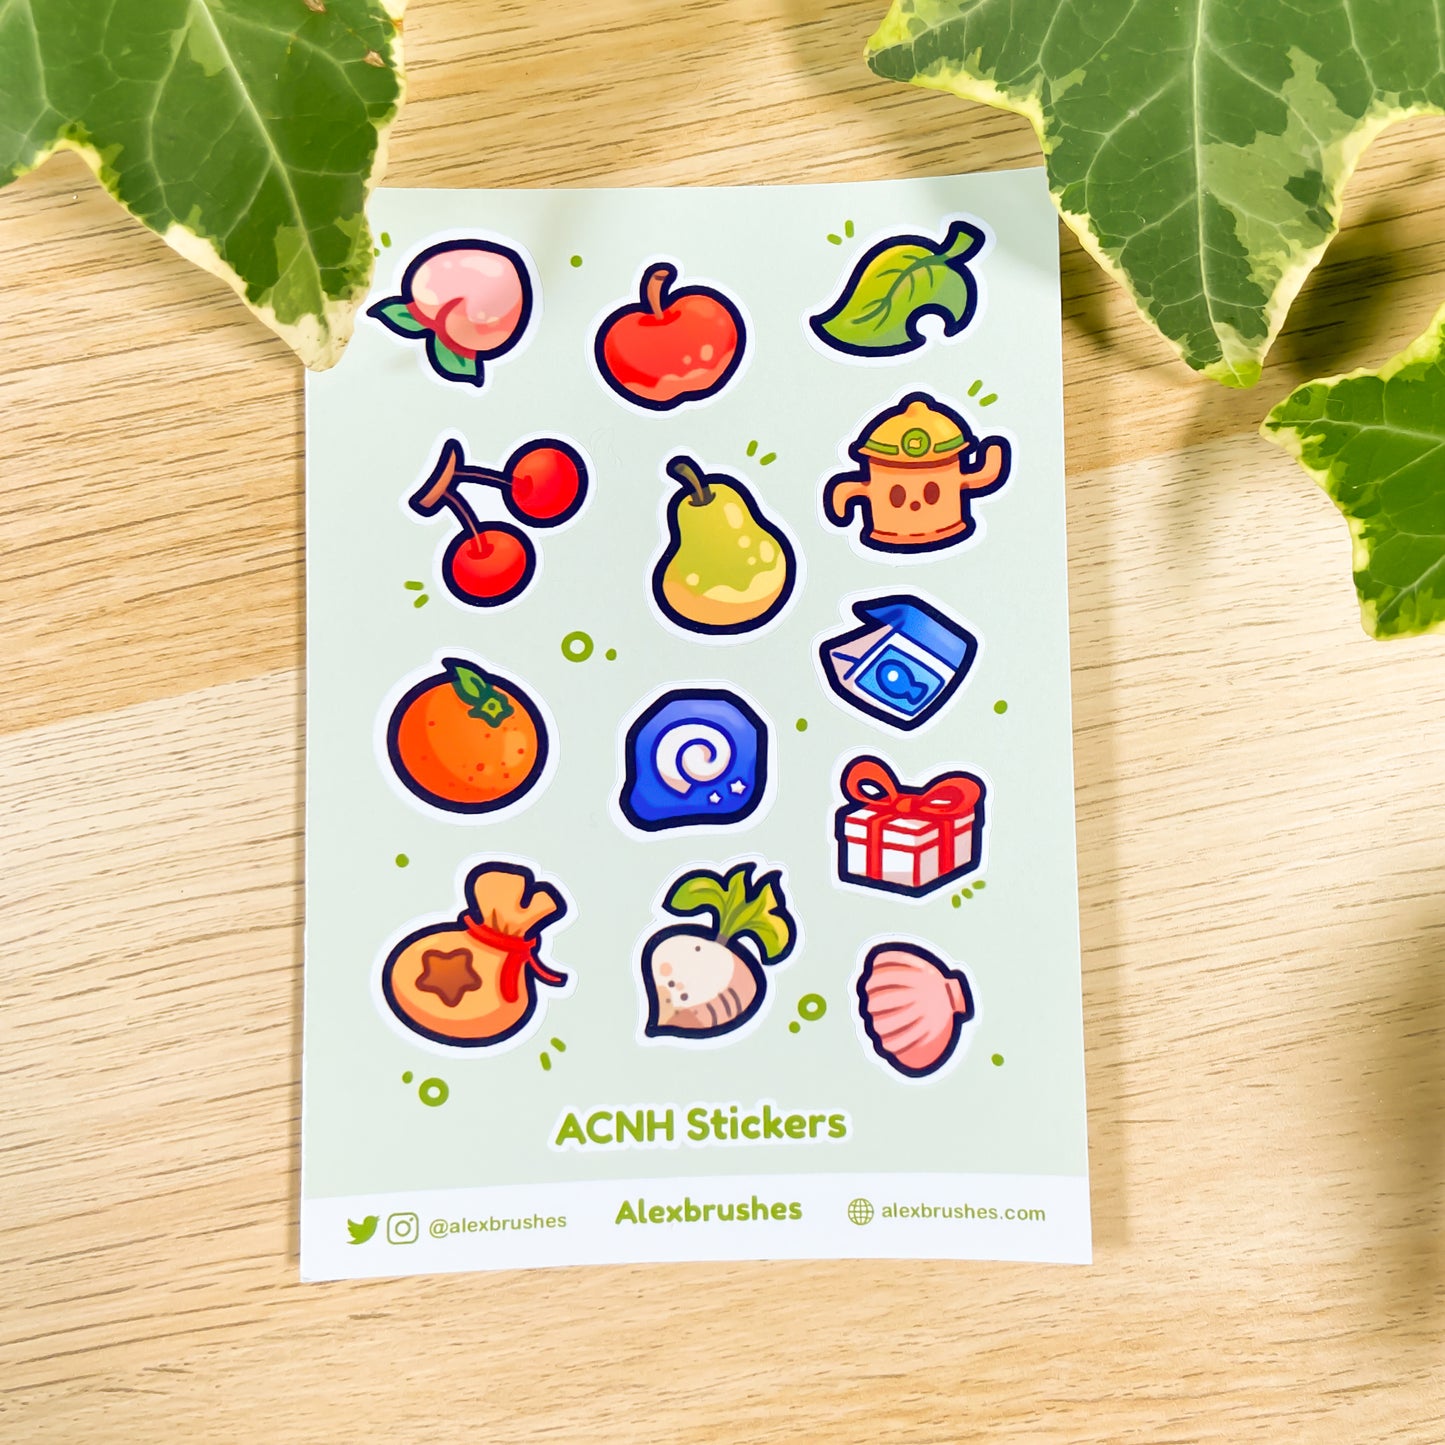 ACNH Sticker Sheet